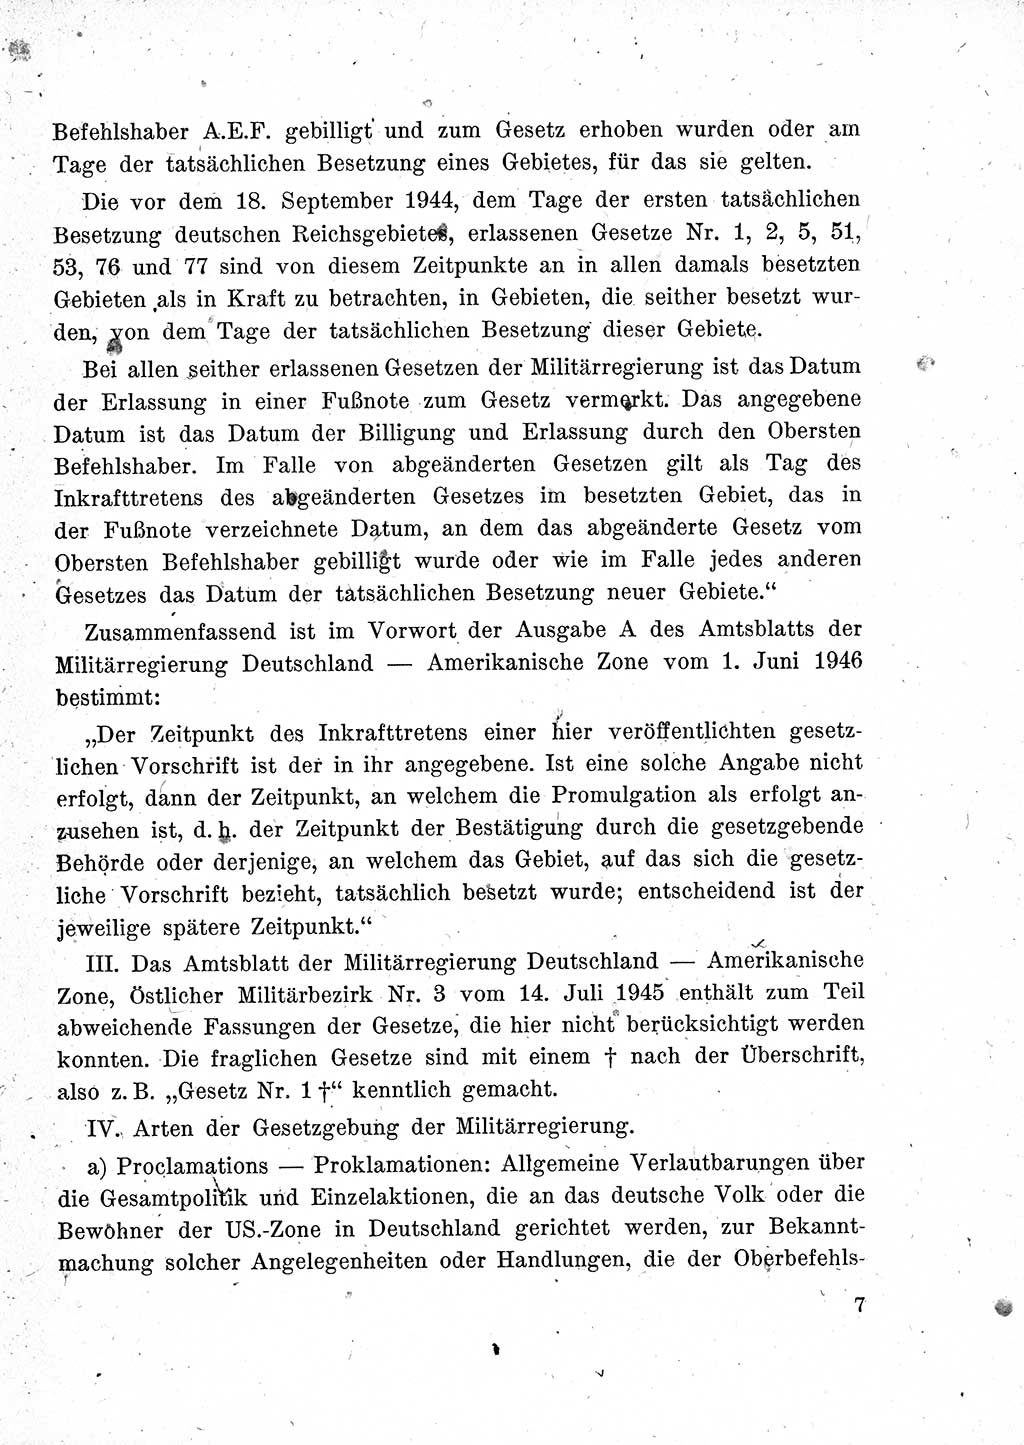 Das Recht der Besatzungsmacht (Deutschland), Proklamationen, Deklerationen, Verordnungen, Gesetze und Bekanntmachungen 1947, Seite 7 (R. Bes. Dtl. 1947, S. 7)